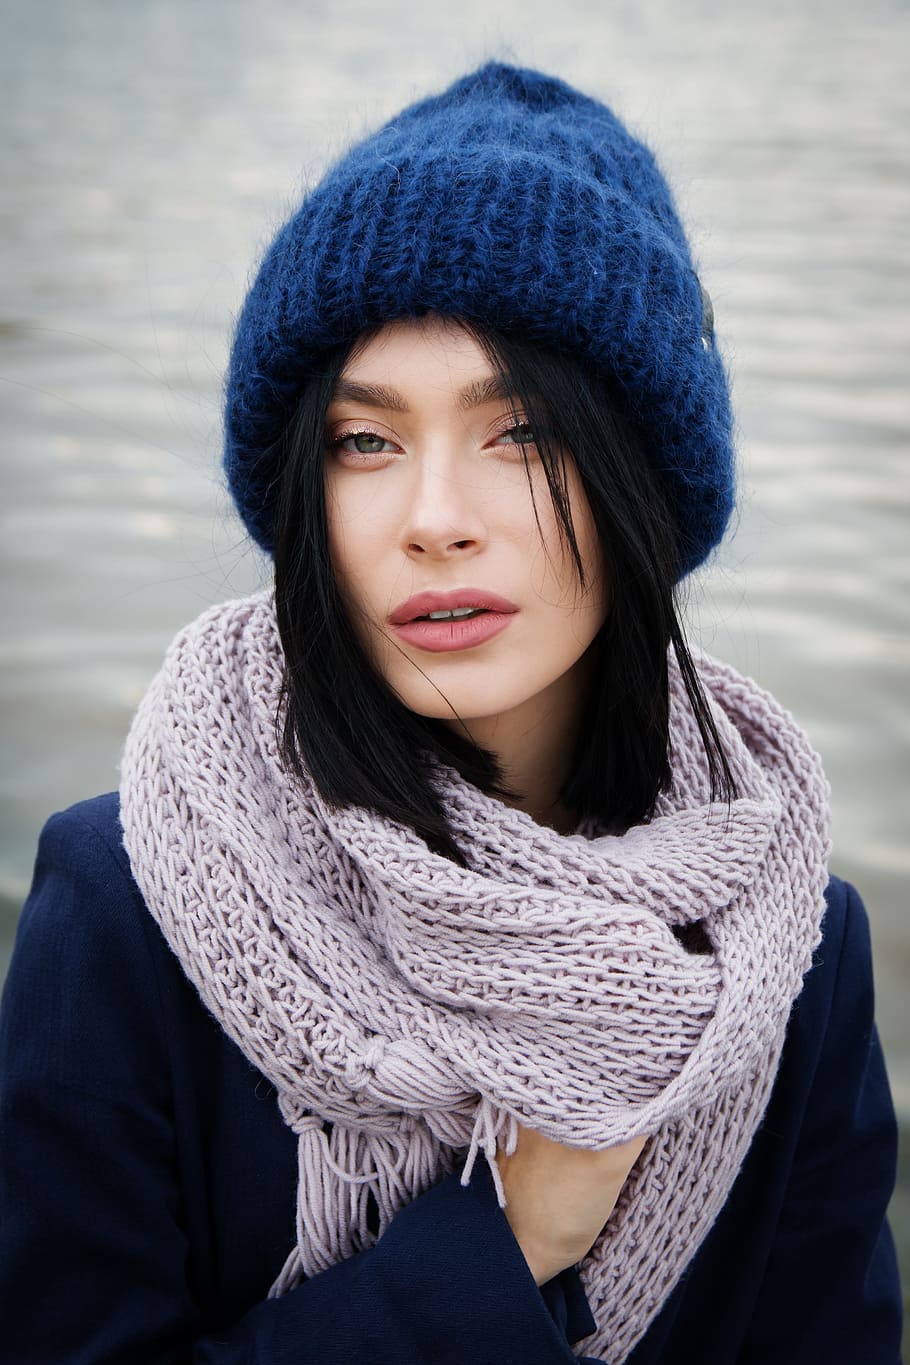 Woman Wearing Blue Knit Hat Girl Brunette Sea Beach Coast Pxfuel 